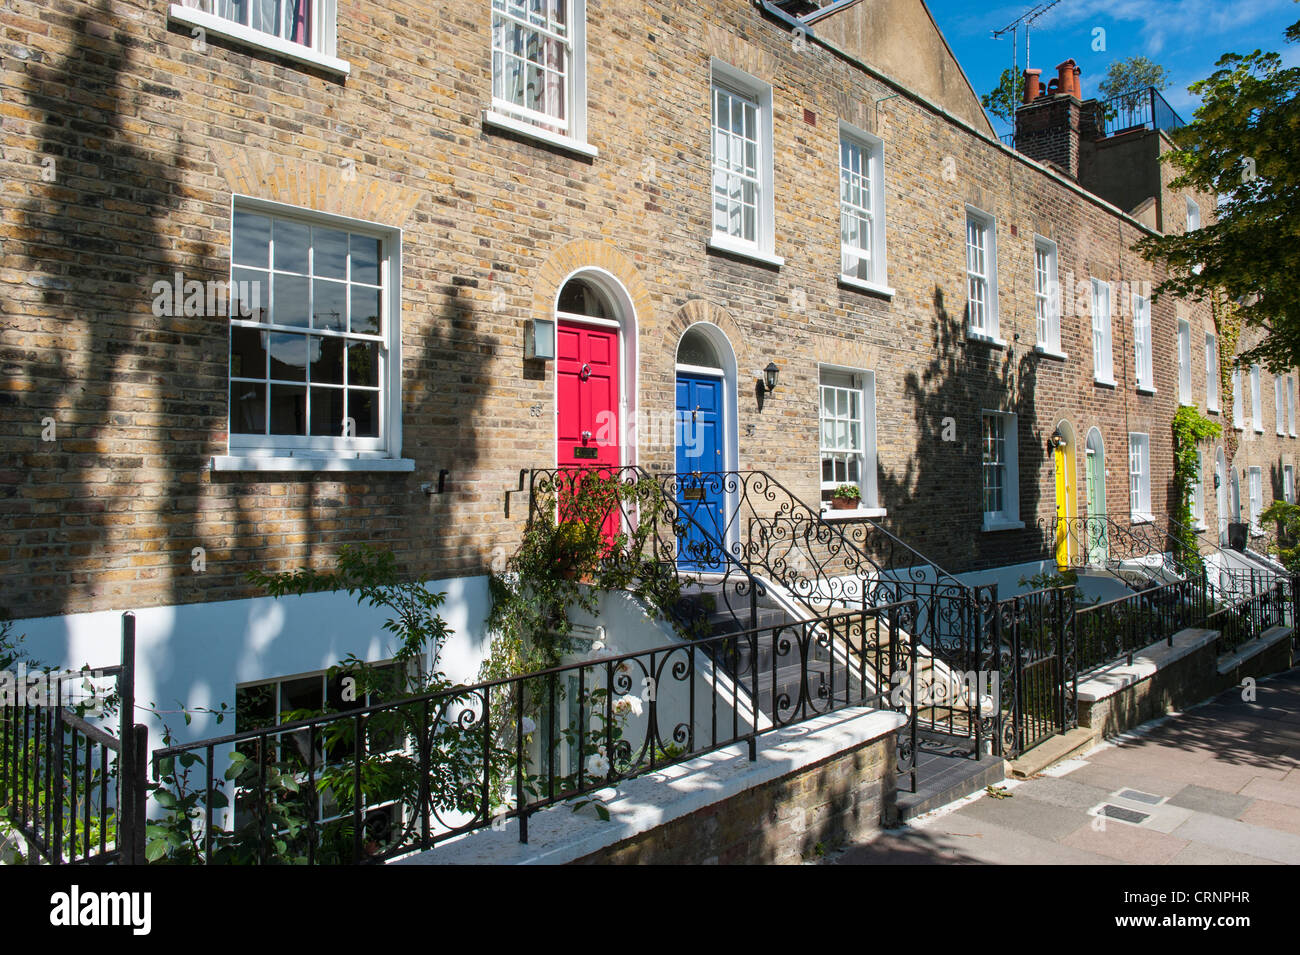 Londres Hampstead Village jaugée à pied terrasse géorgienne des maisons mitoyennes ou des fenêtres à guillotine cottages & coloré portes Banque D'Images